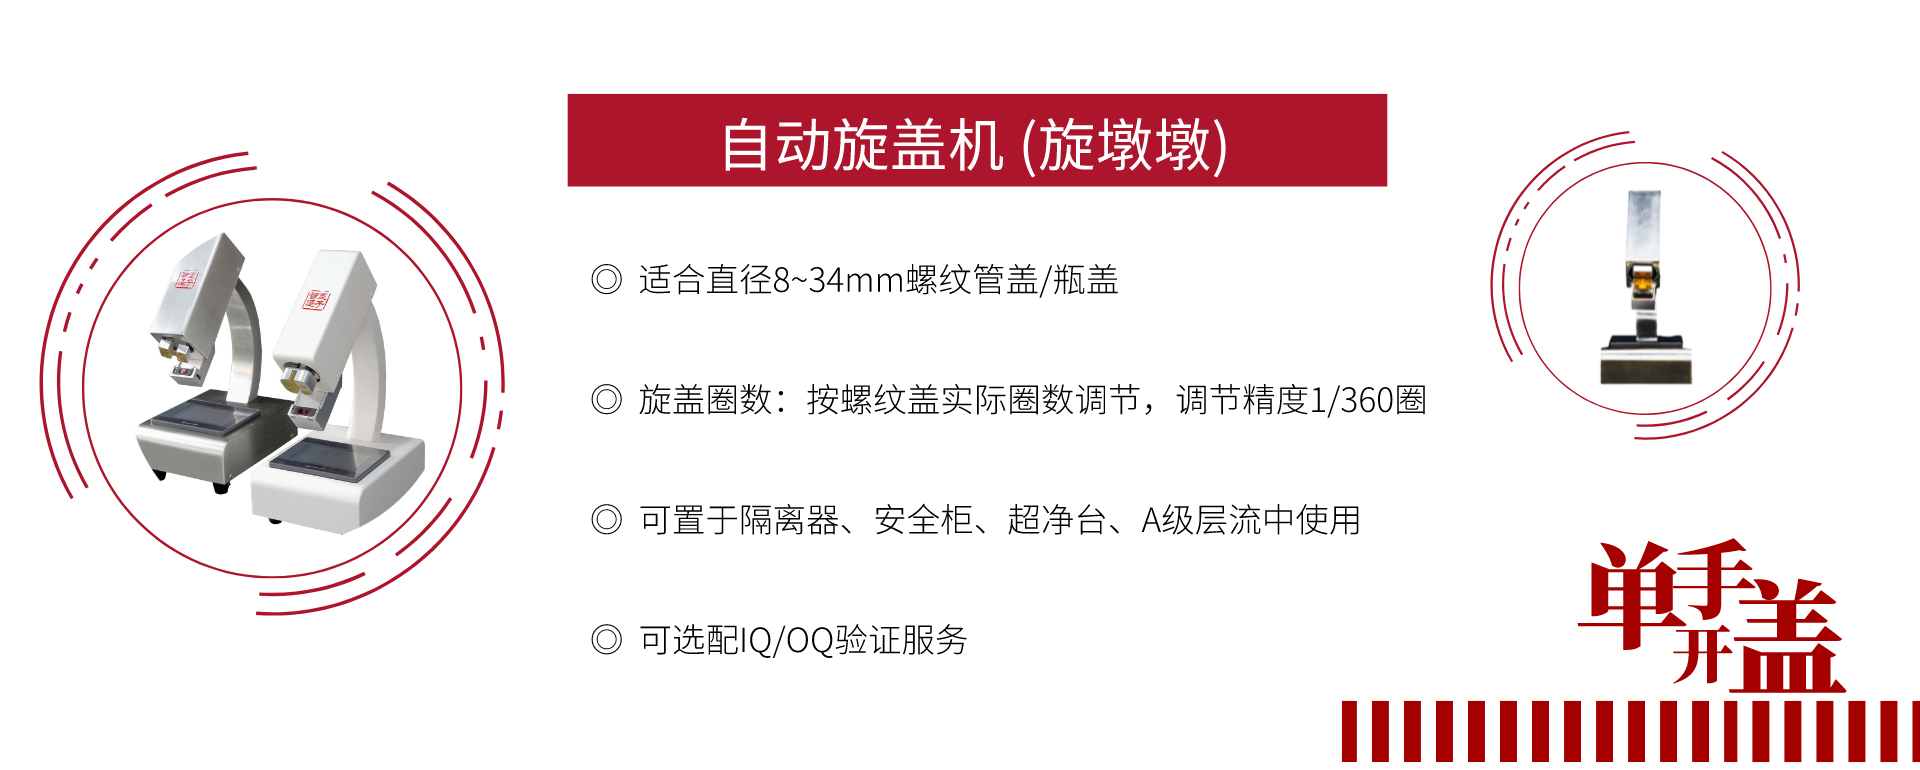 关于当前产品bb原贝博app下载链接·(中国)官方网站的成功案例等相关图片